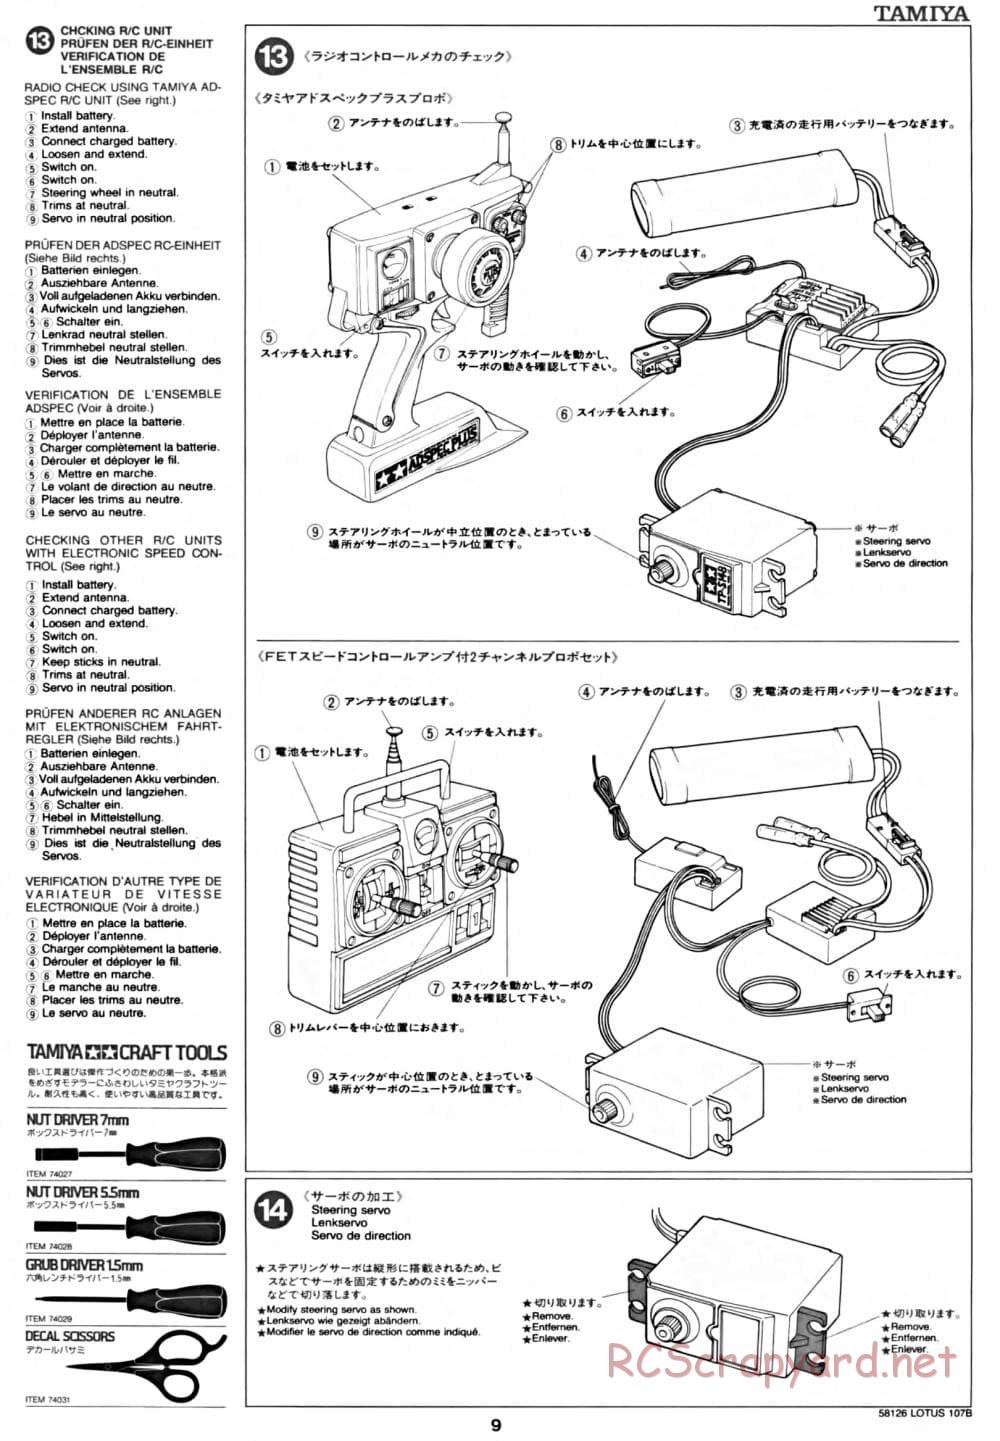 Tamiya - Lotus 107B Ford - F103 Chassis - Manual - Page 9